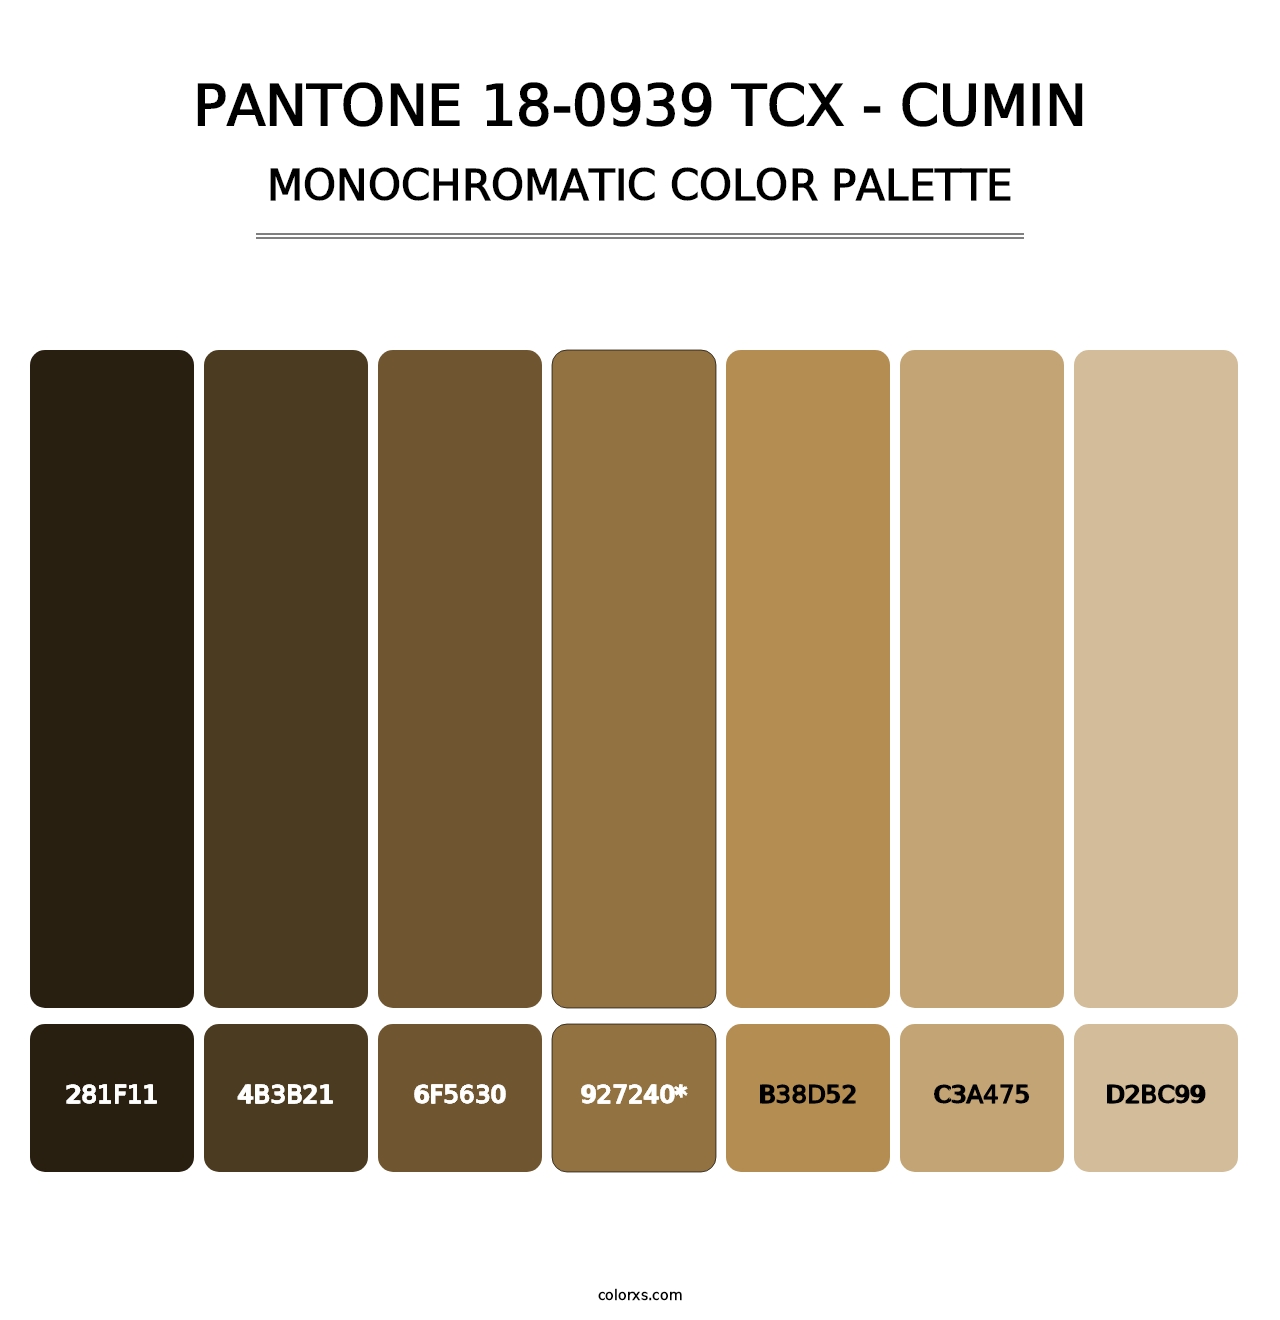 PANTONE 18-0939 TCX - Cumin - Monochromatic Color Palette